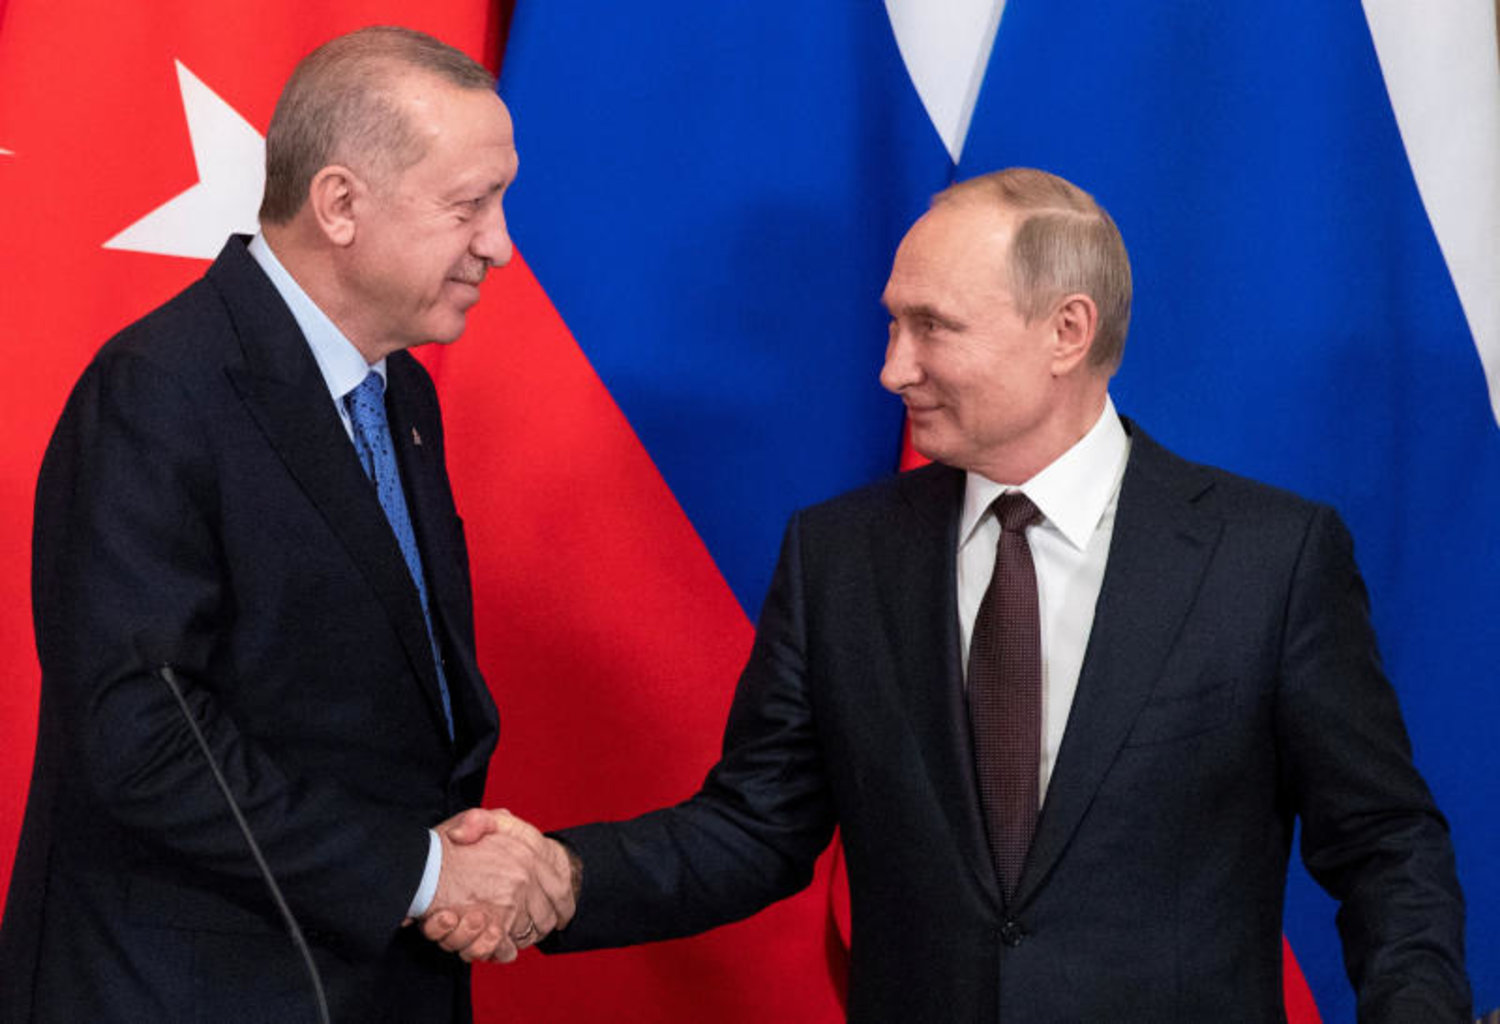 الرئيس الروسي فلاديمير بوتين يصافح نظيره التركي رجب طيب إردوغان خلال مؤتمر صحافي في موسكو (رويترز)